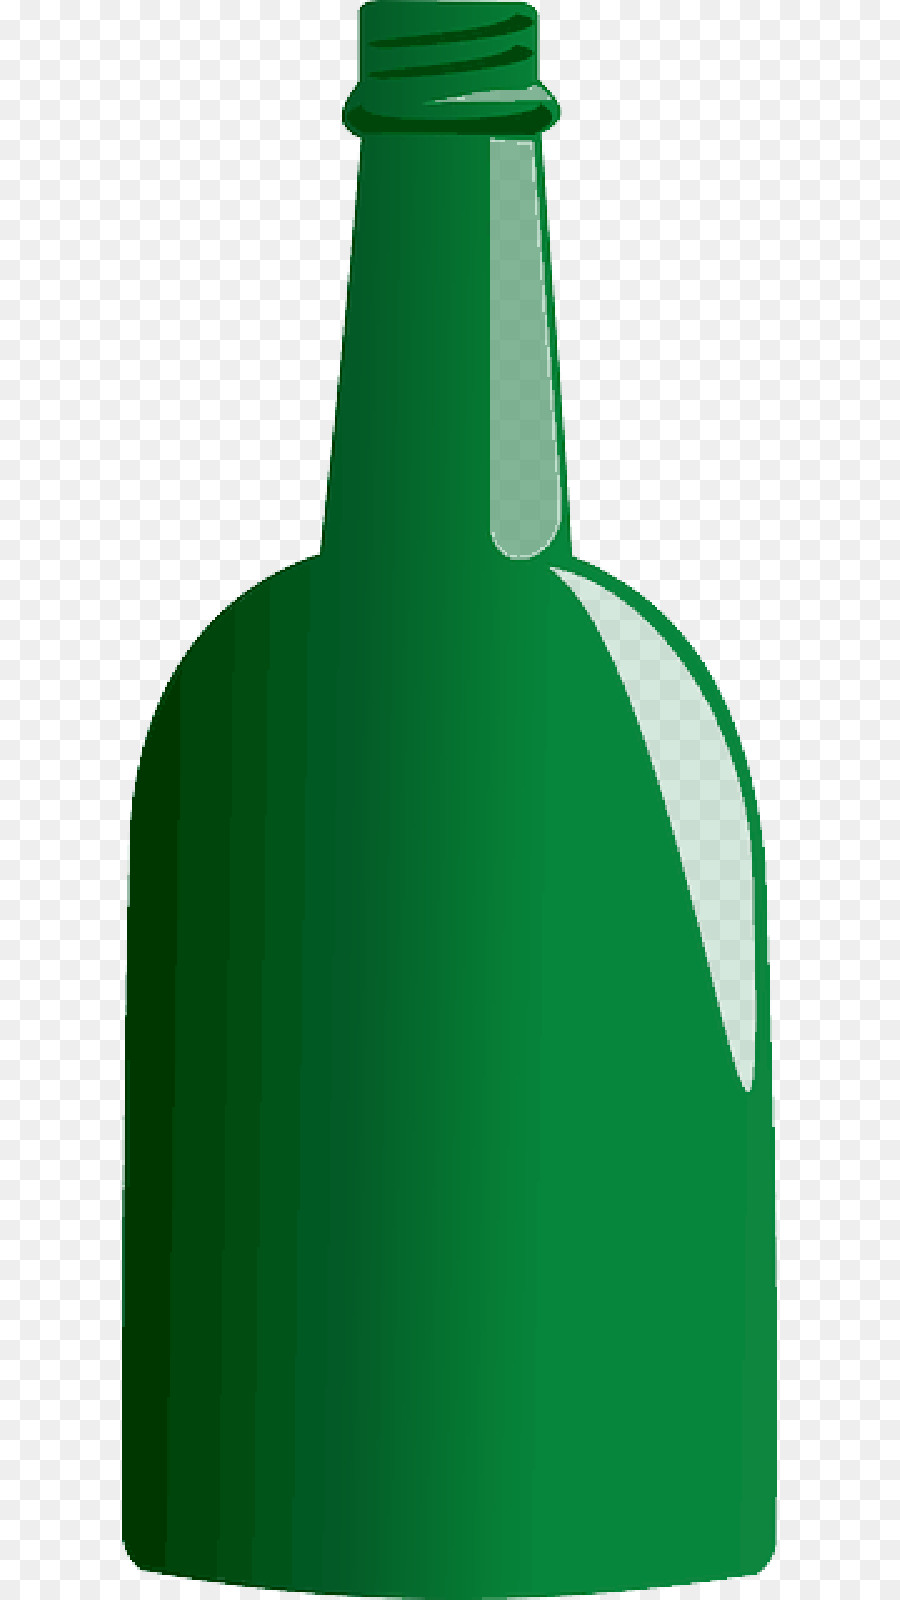 Clip art Beer bottle Vector graphics Jeroboam - wine bottle png download - 800*1600 - Free Transparent Bottle png Download.